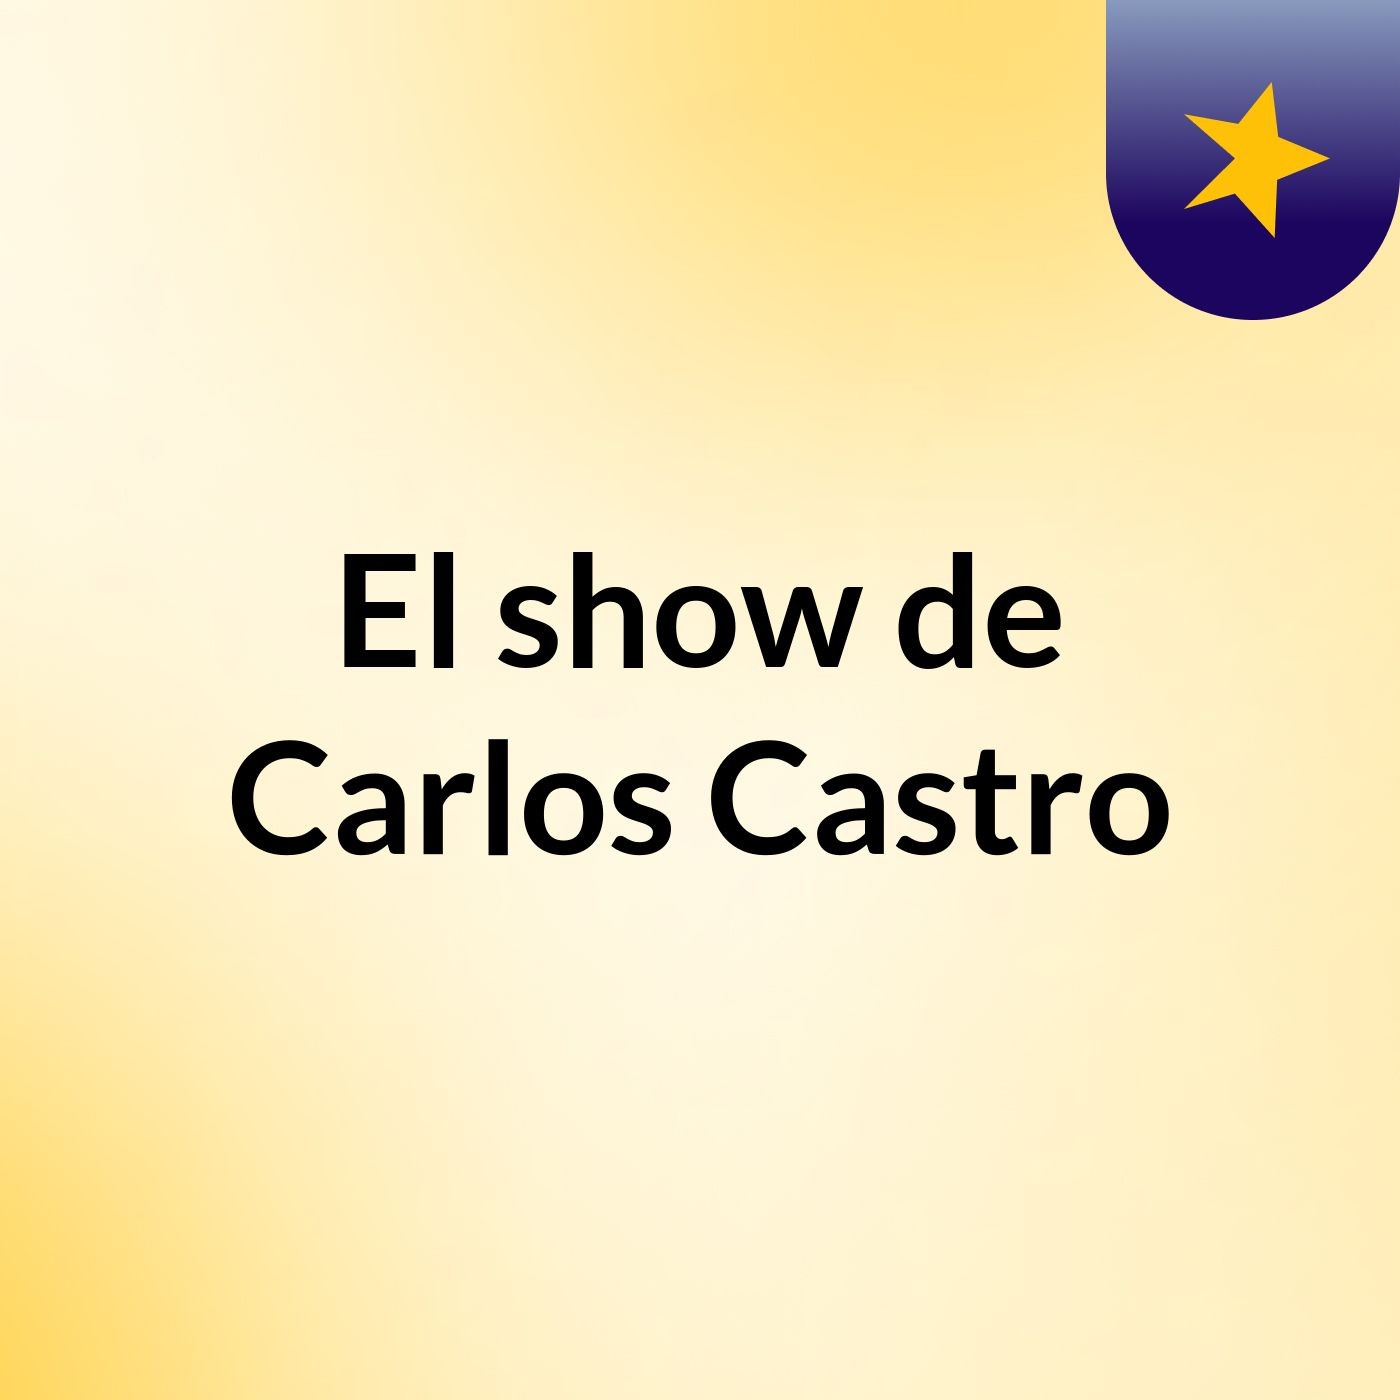 El show de Carlos Castro